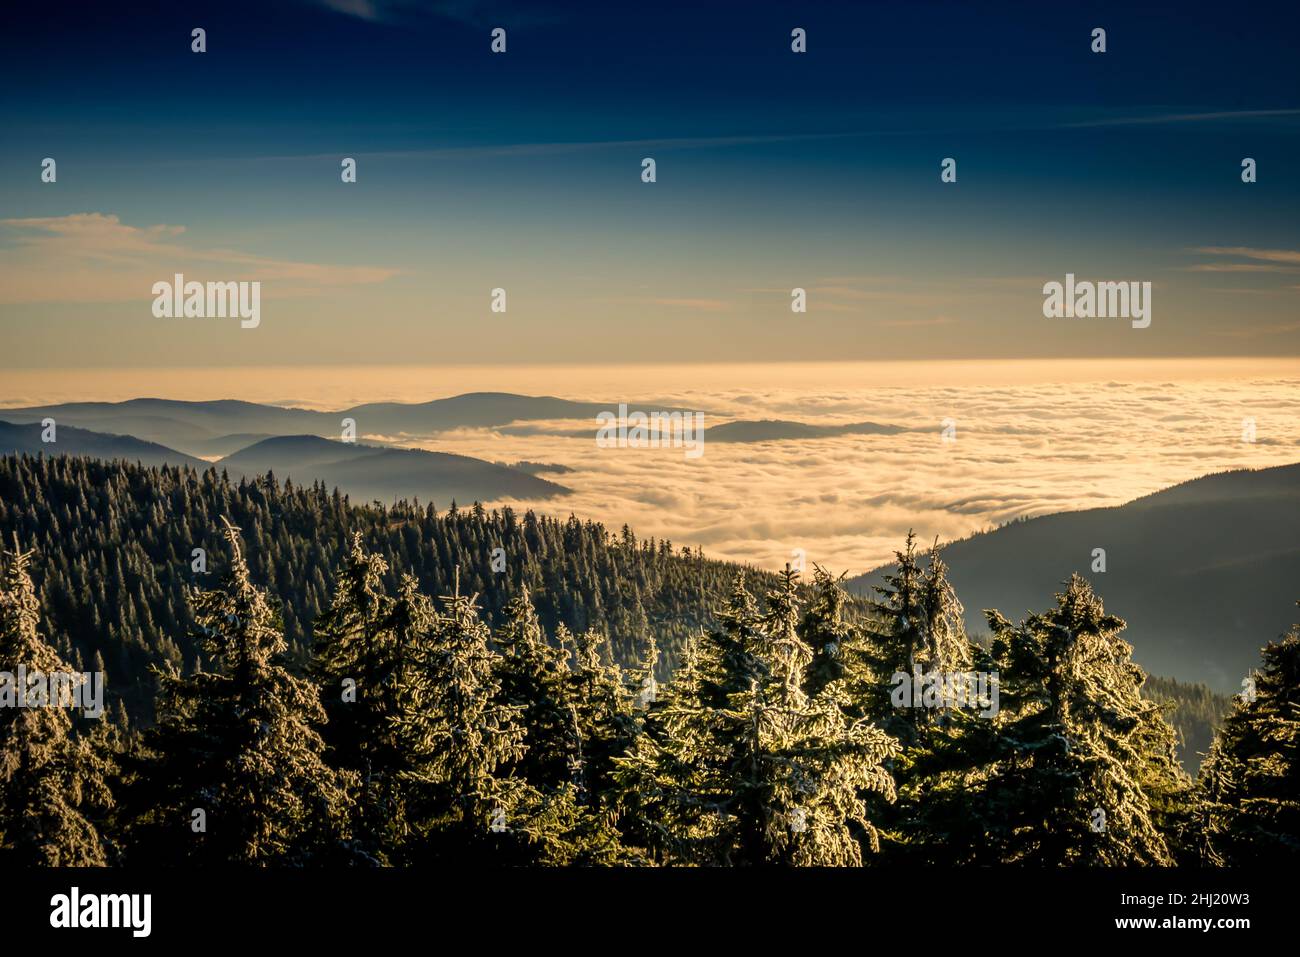 Paesaggio panoramico con alberi ricoperti di rime, vista da una fascia montatina alla valle piena di nubi basse durante l'inversione di temperatura. Jeseniky. Foto Stock